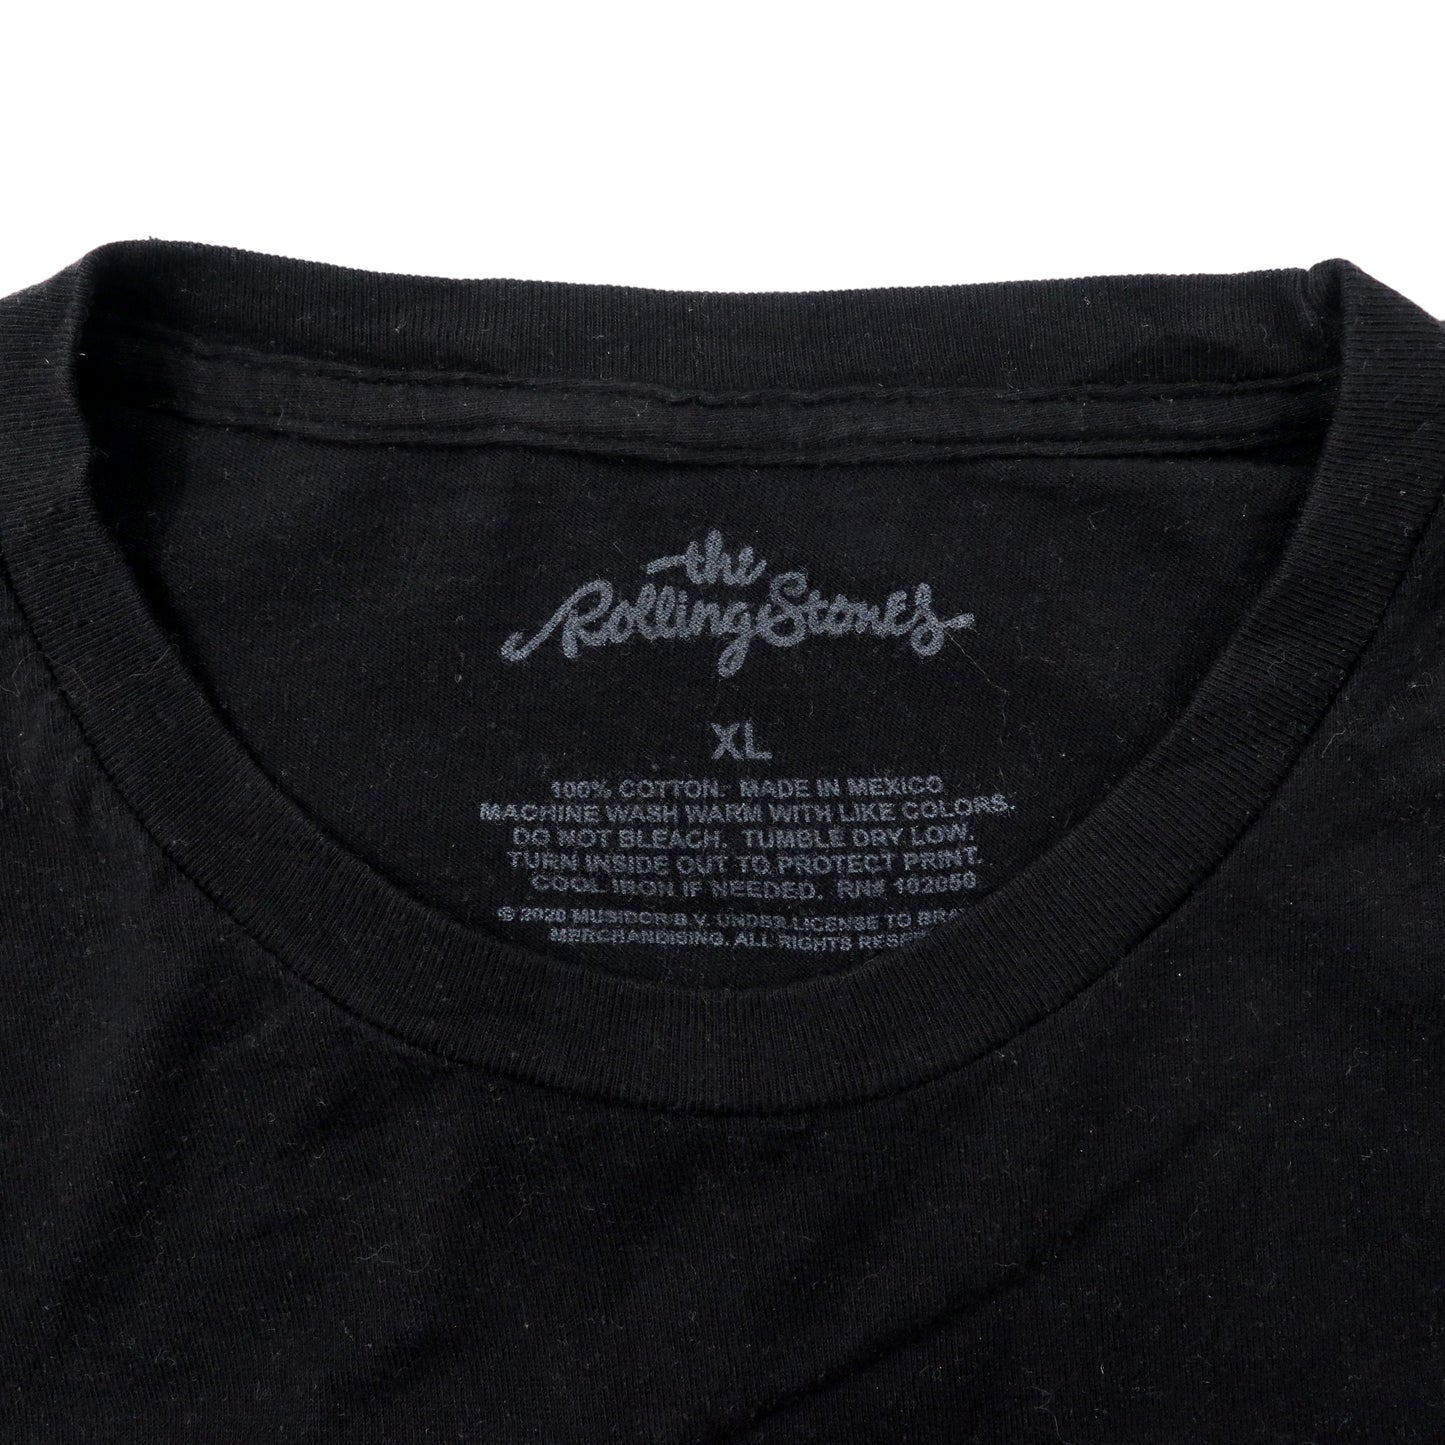 THE ROLLING STONES バンドTシャツ ベロT XL ブラック コットン ビッグサイズ メキシコ製